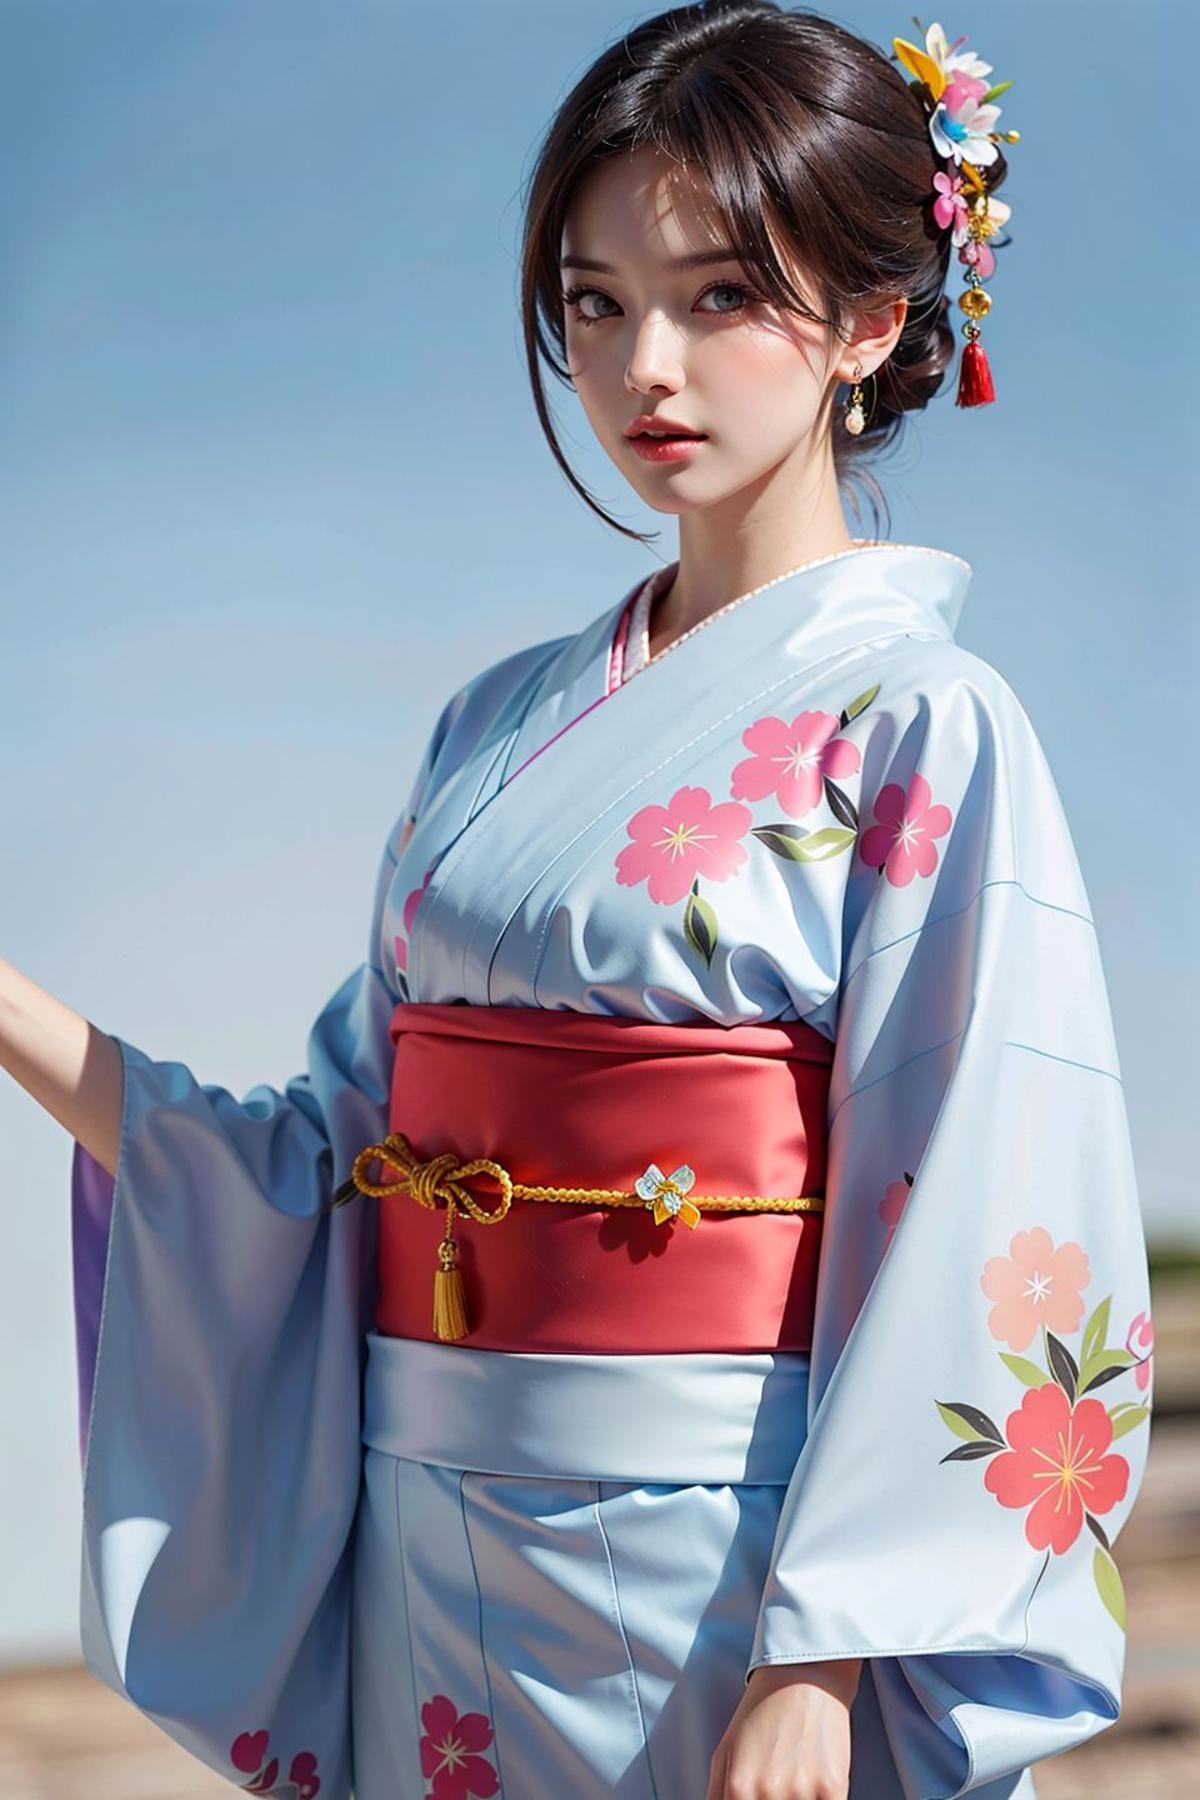 一件简单的和服/浴衣 a simple kimono/yukata image by ylnnn